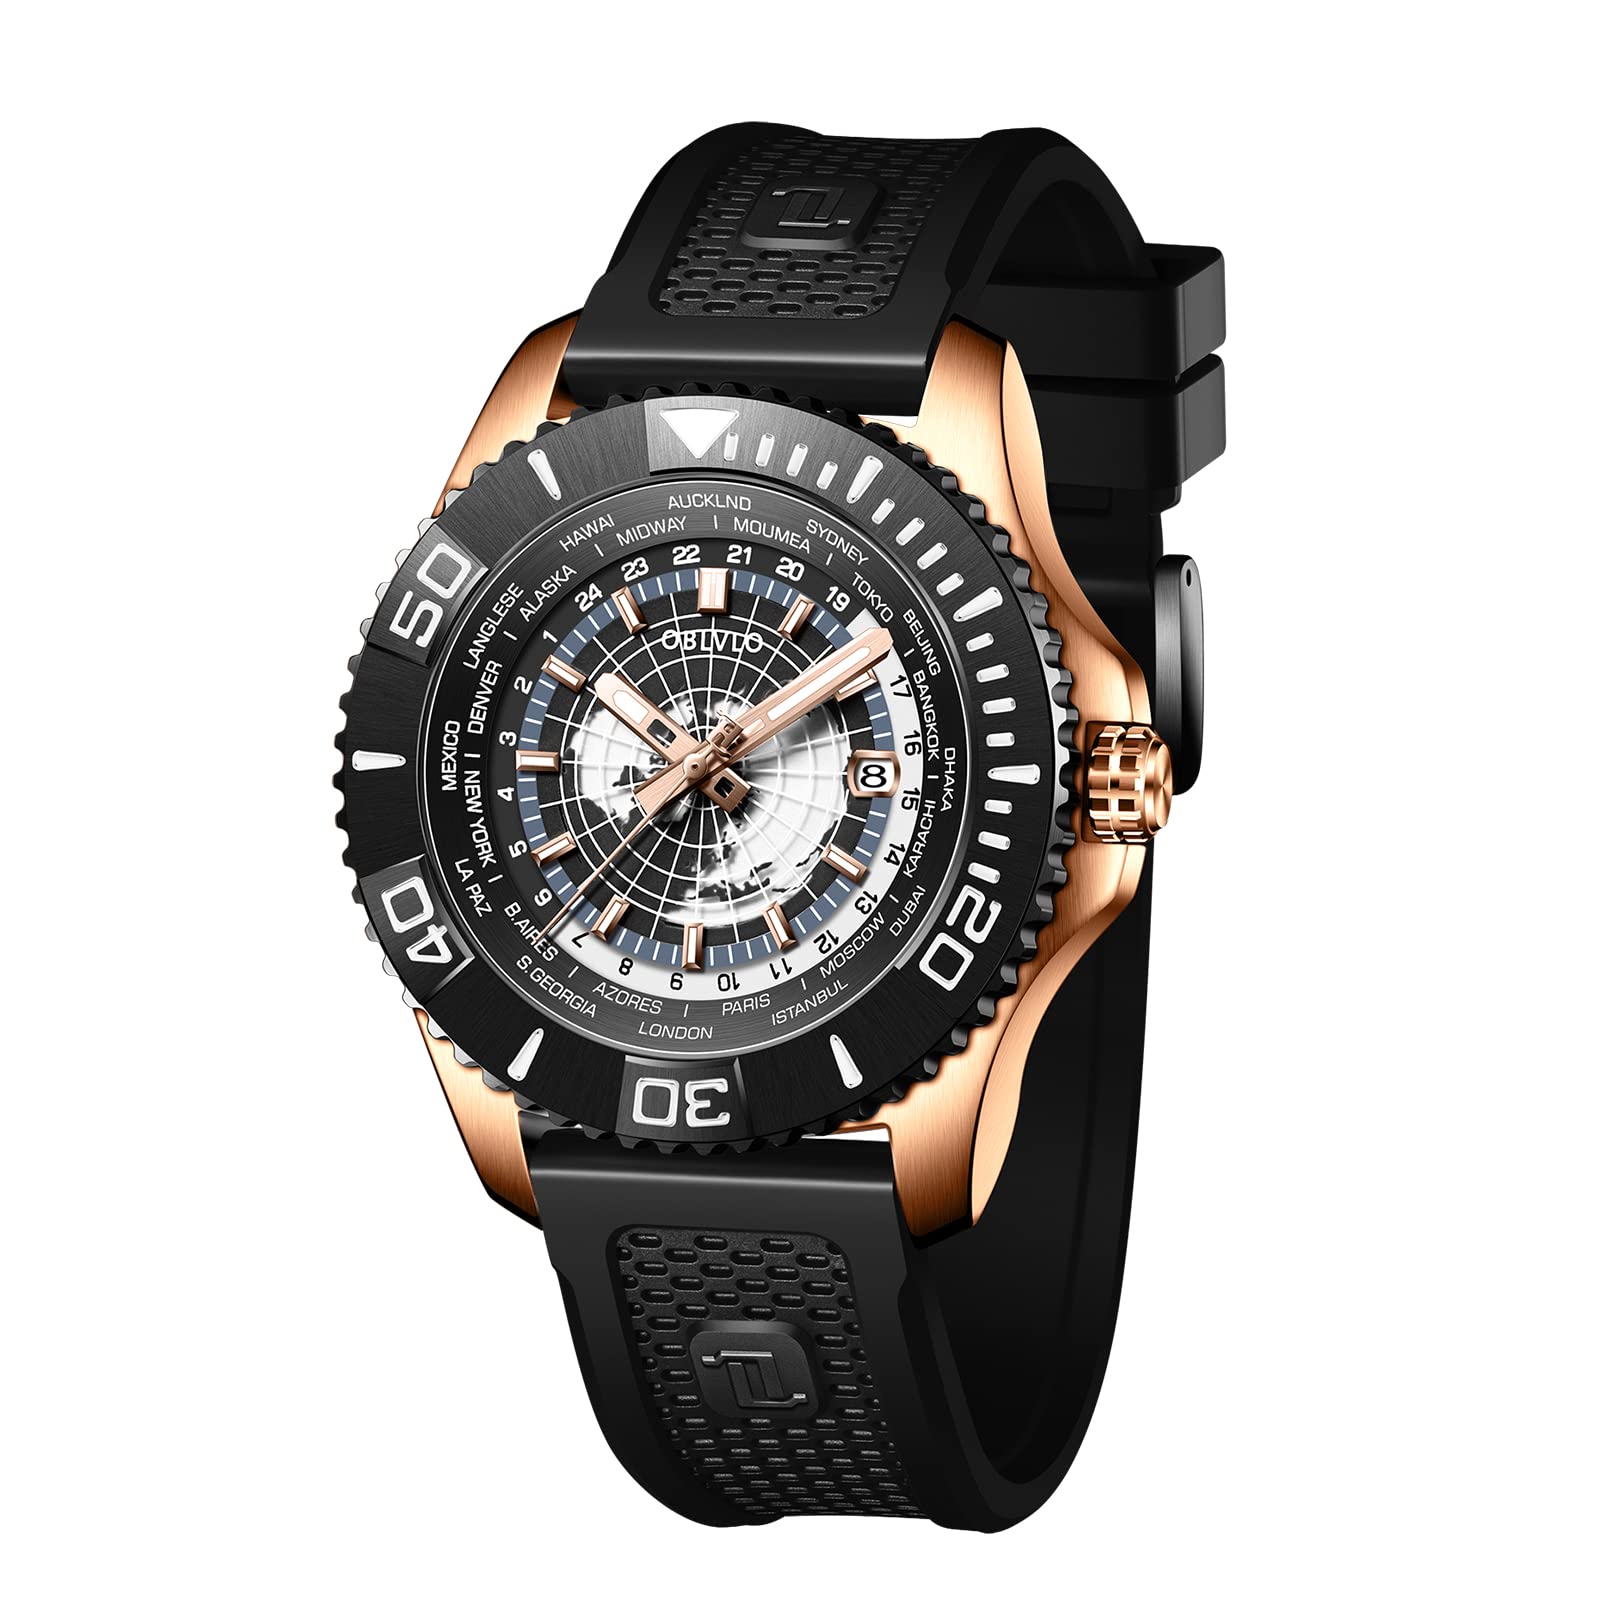 OBLVLO Luxusmarke World Time Military Automatische Mechanische Uhr für Herren Leder Wasserdicht Super Luminous Herrenuhren BM